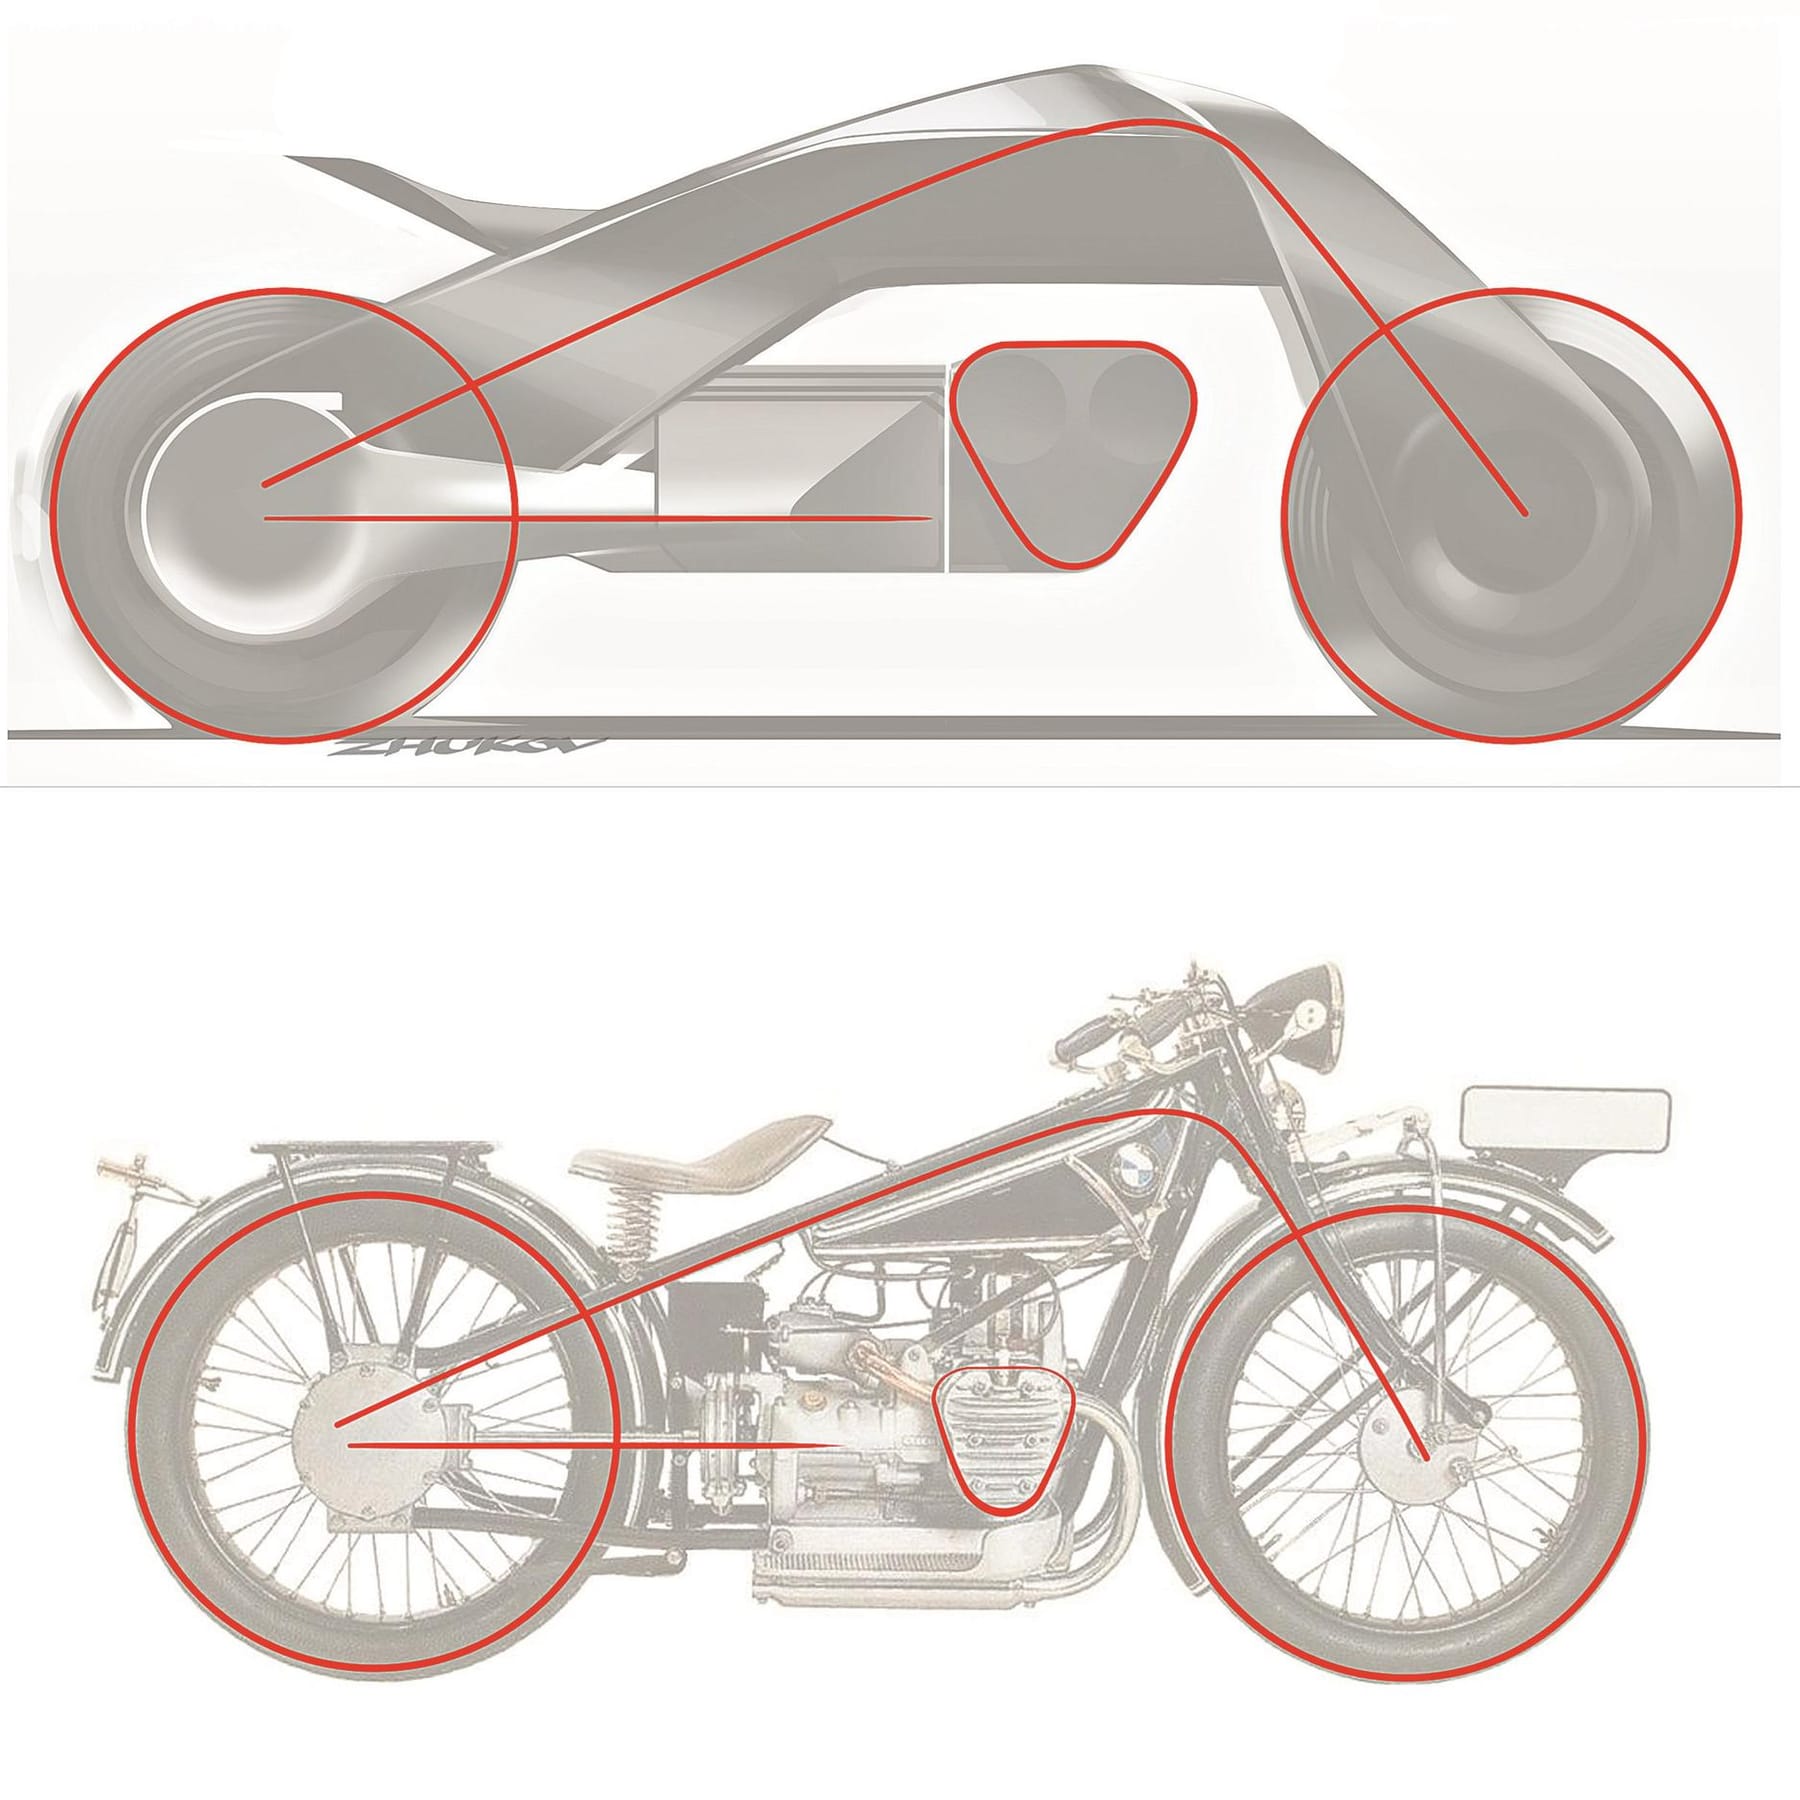 BMW zeigt das Motorrad der Zukunft